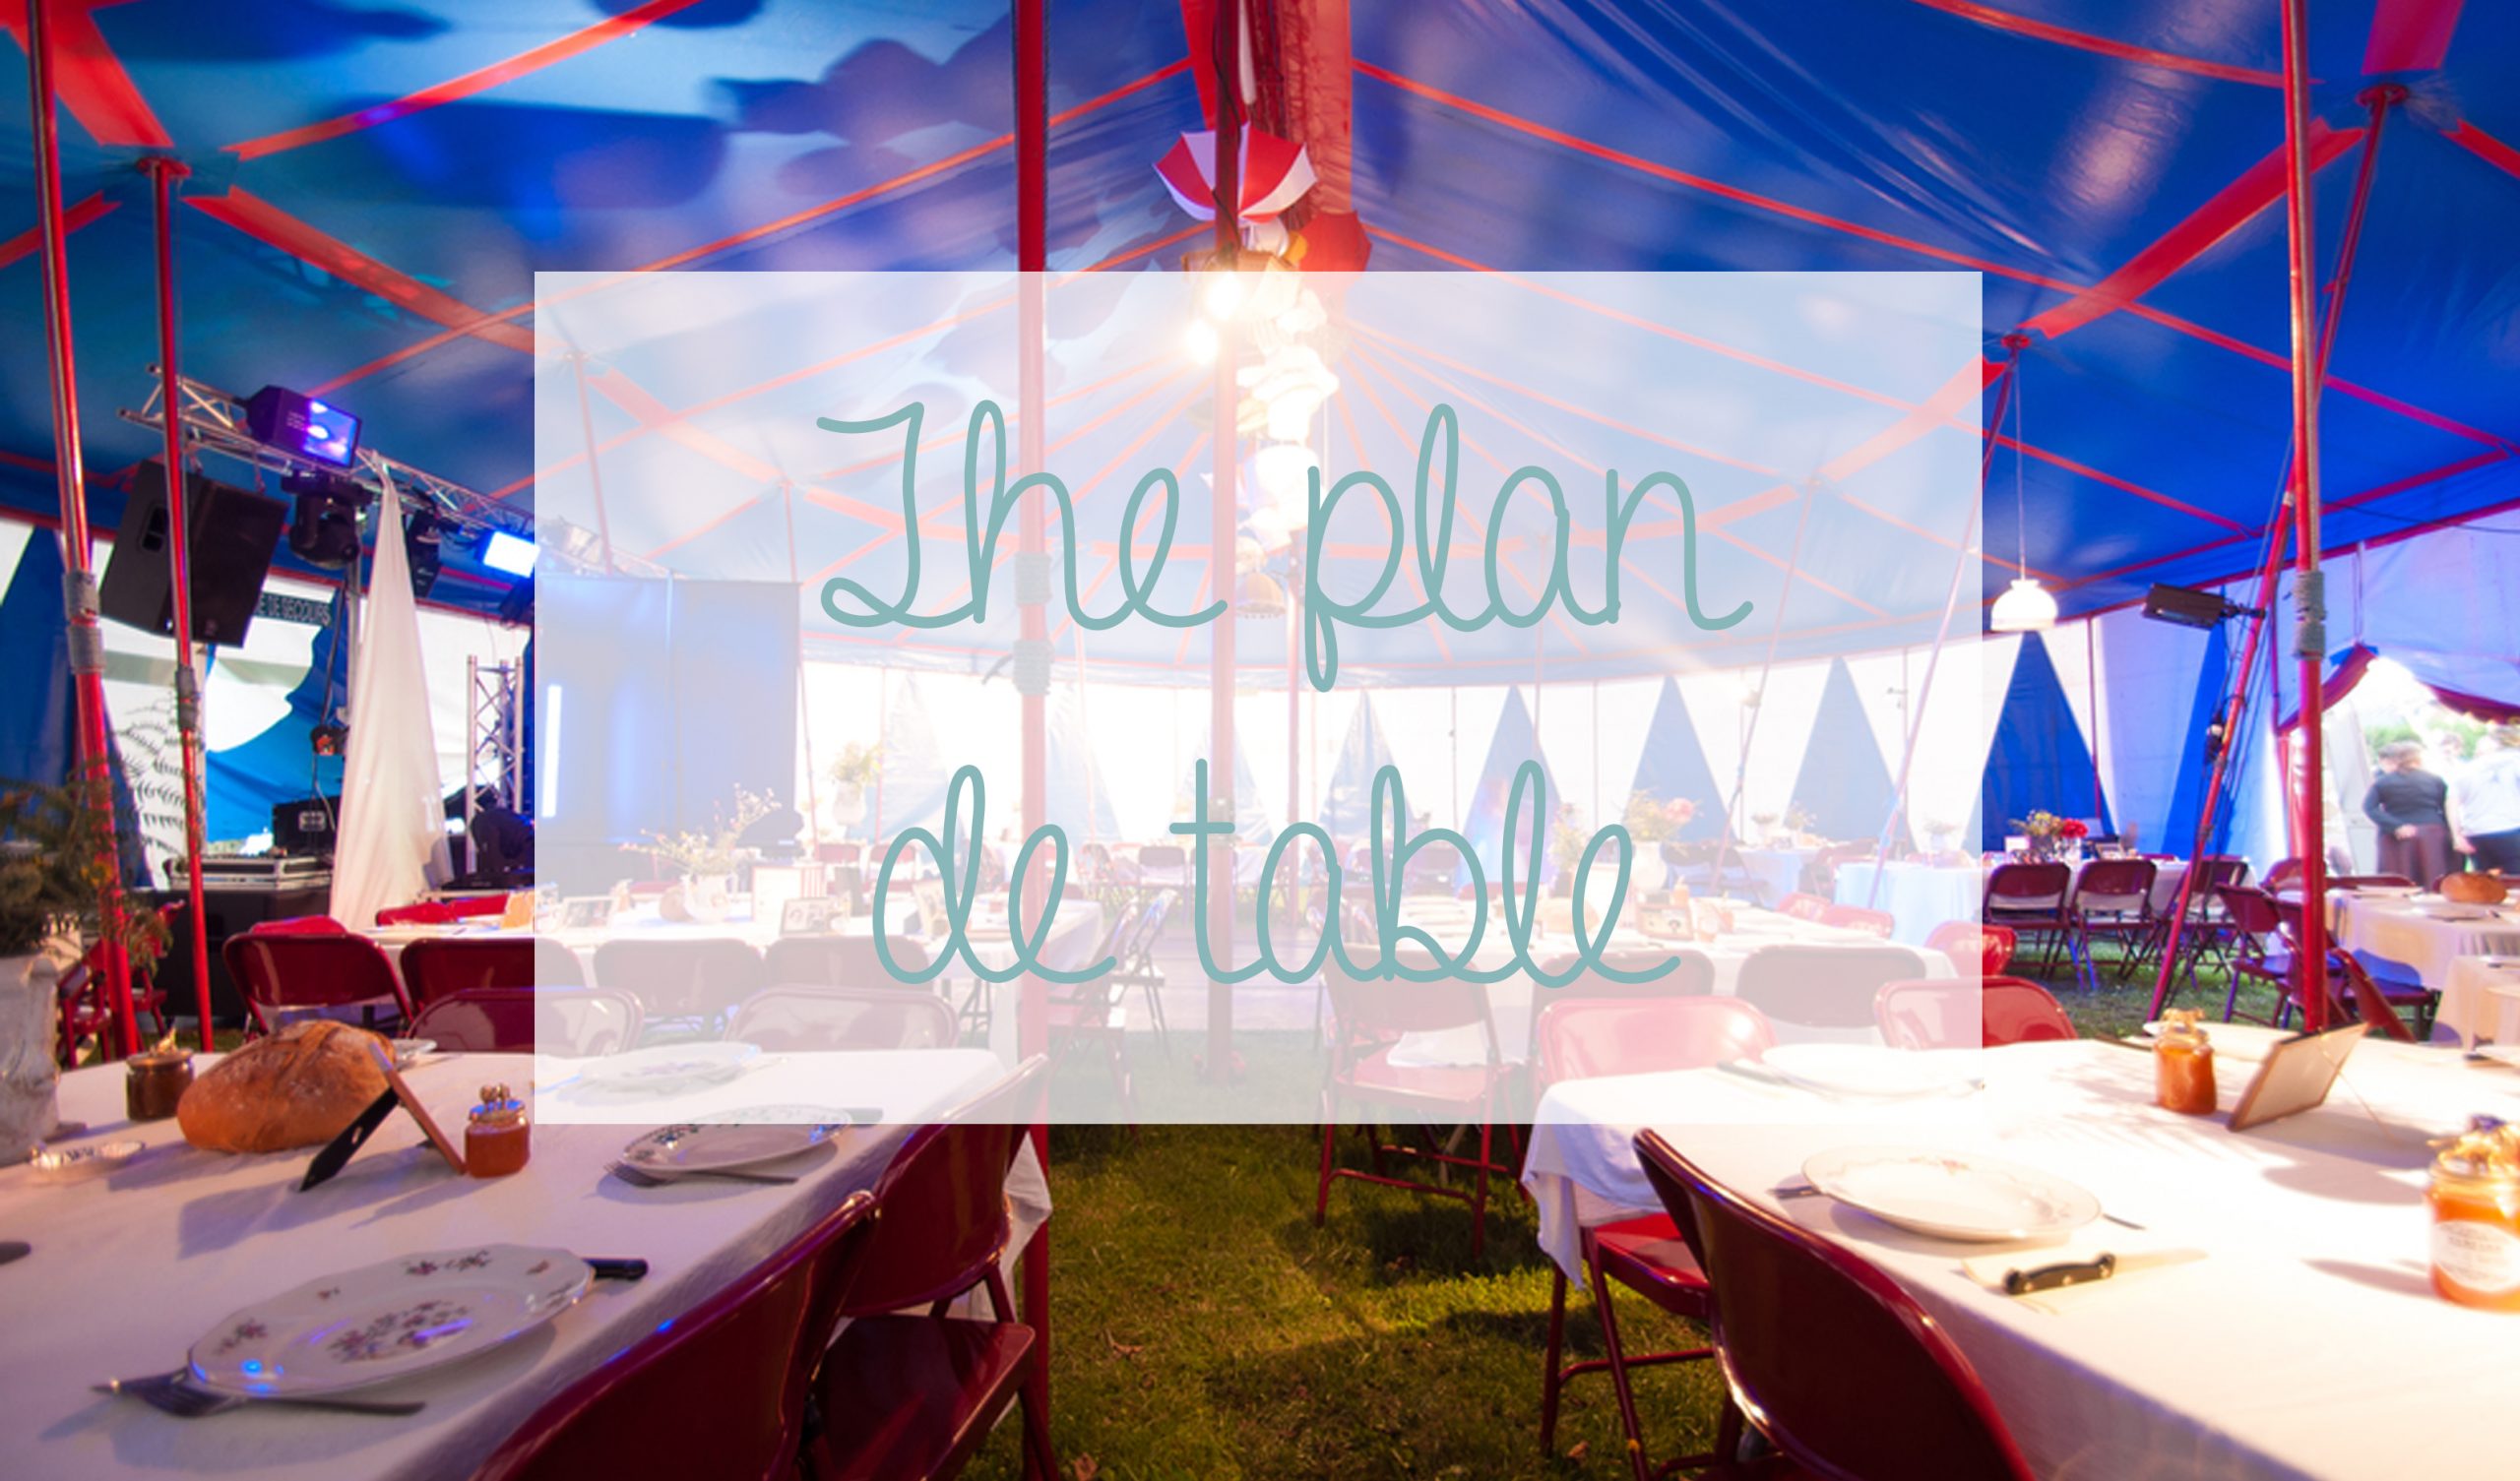 The plan de table